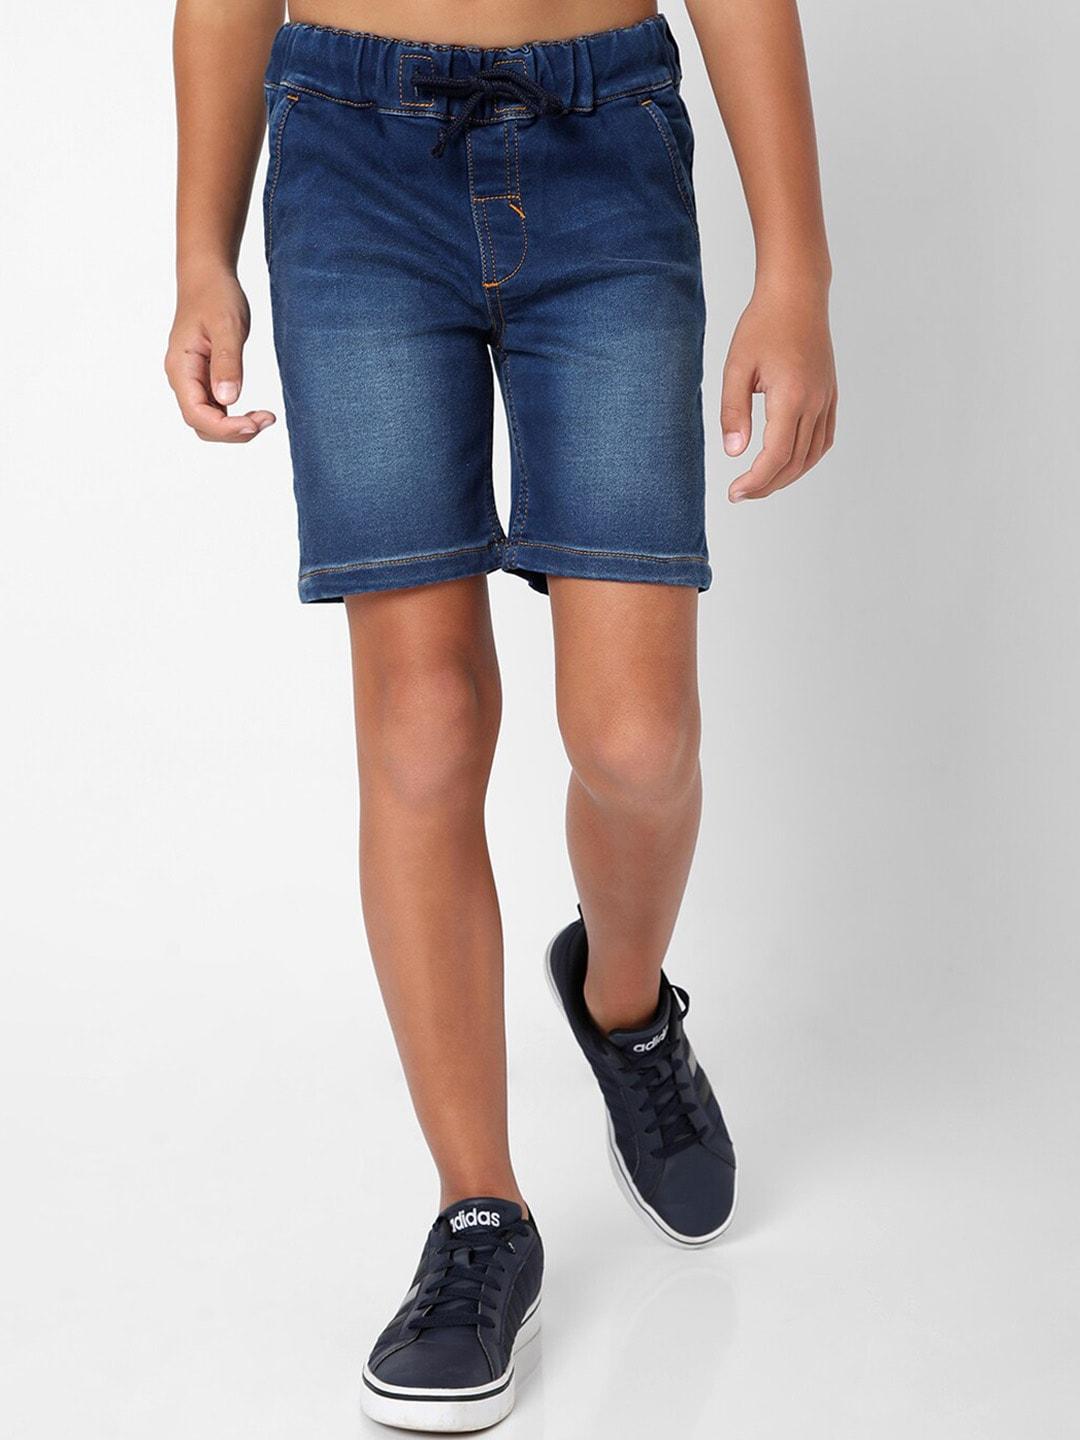 gas-boys-blue-slim-fit-denim-shorts